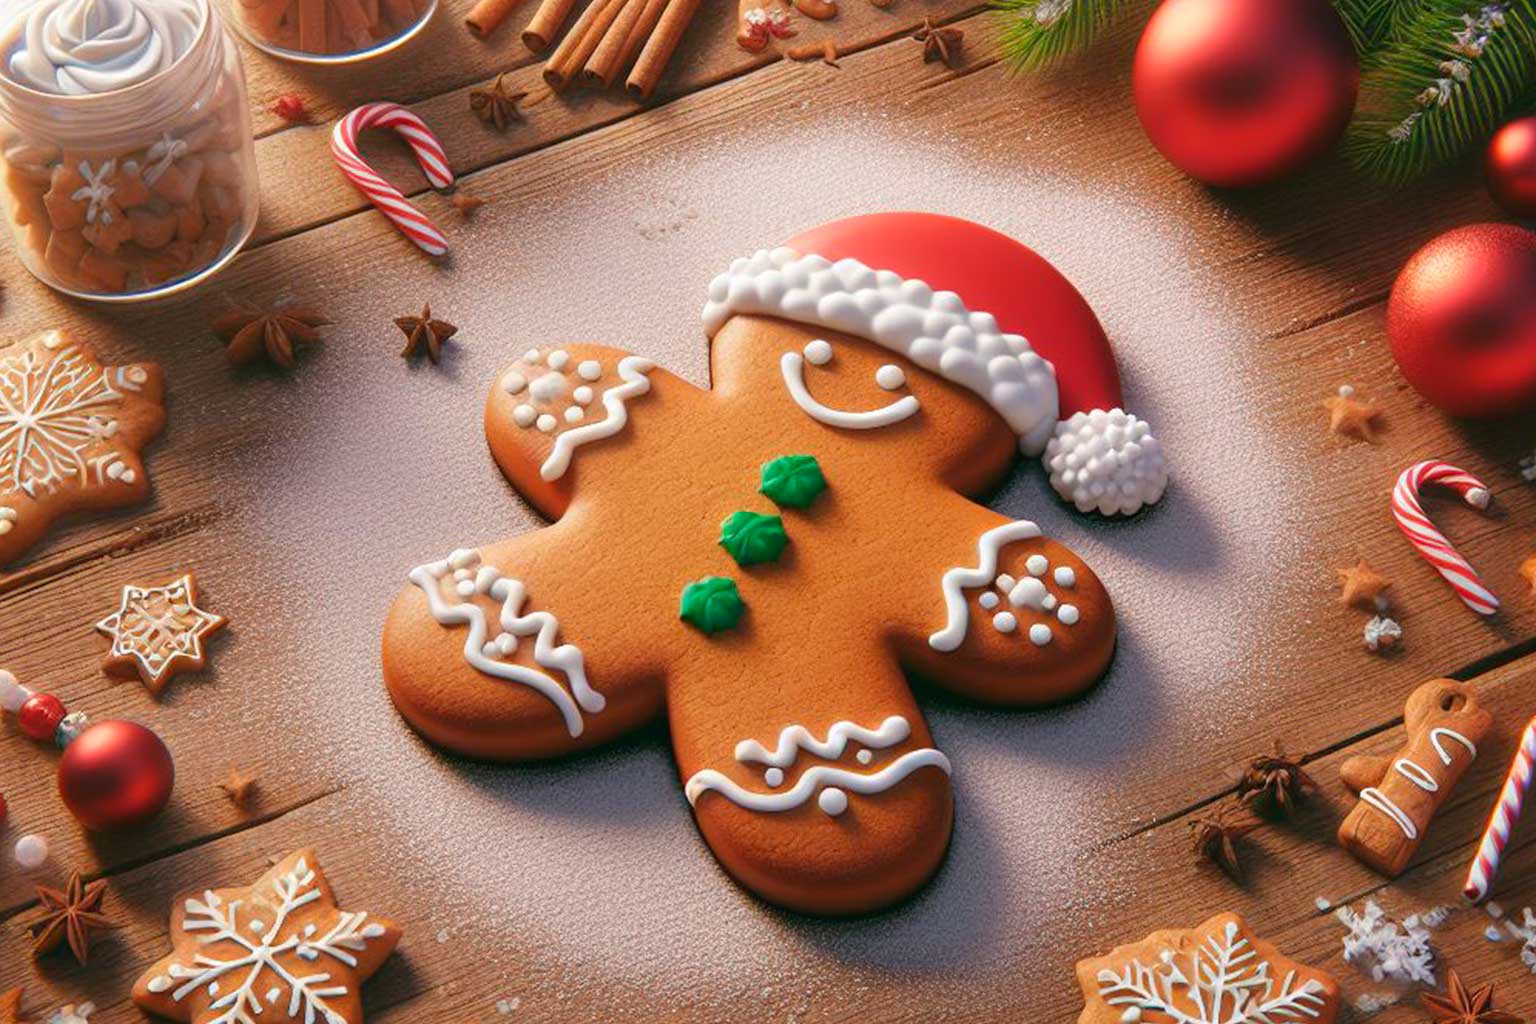 Biscoito Gingerbread em formato de boneco decorado